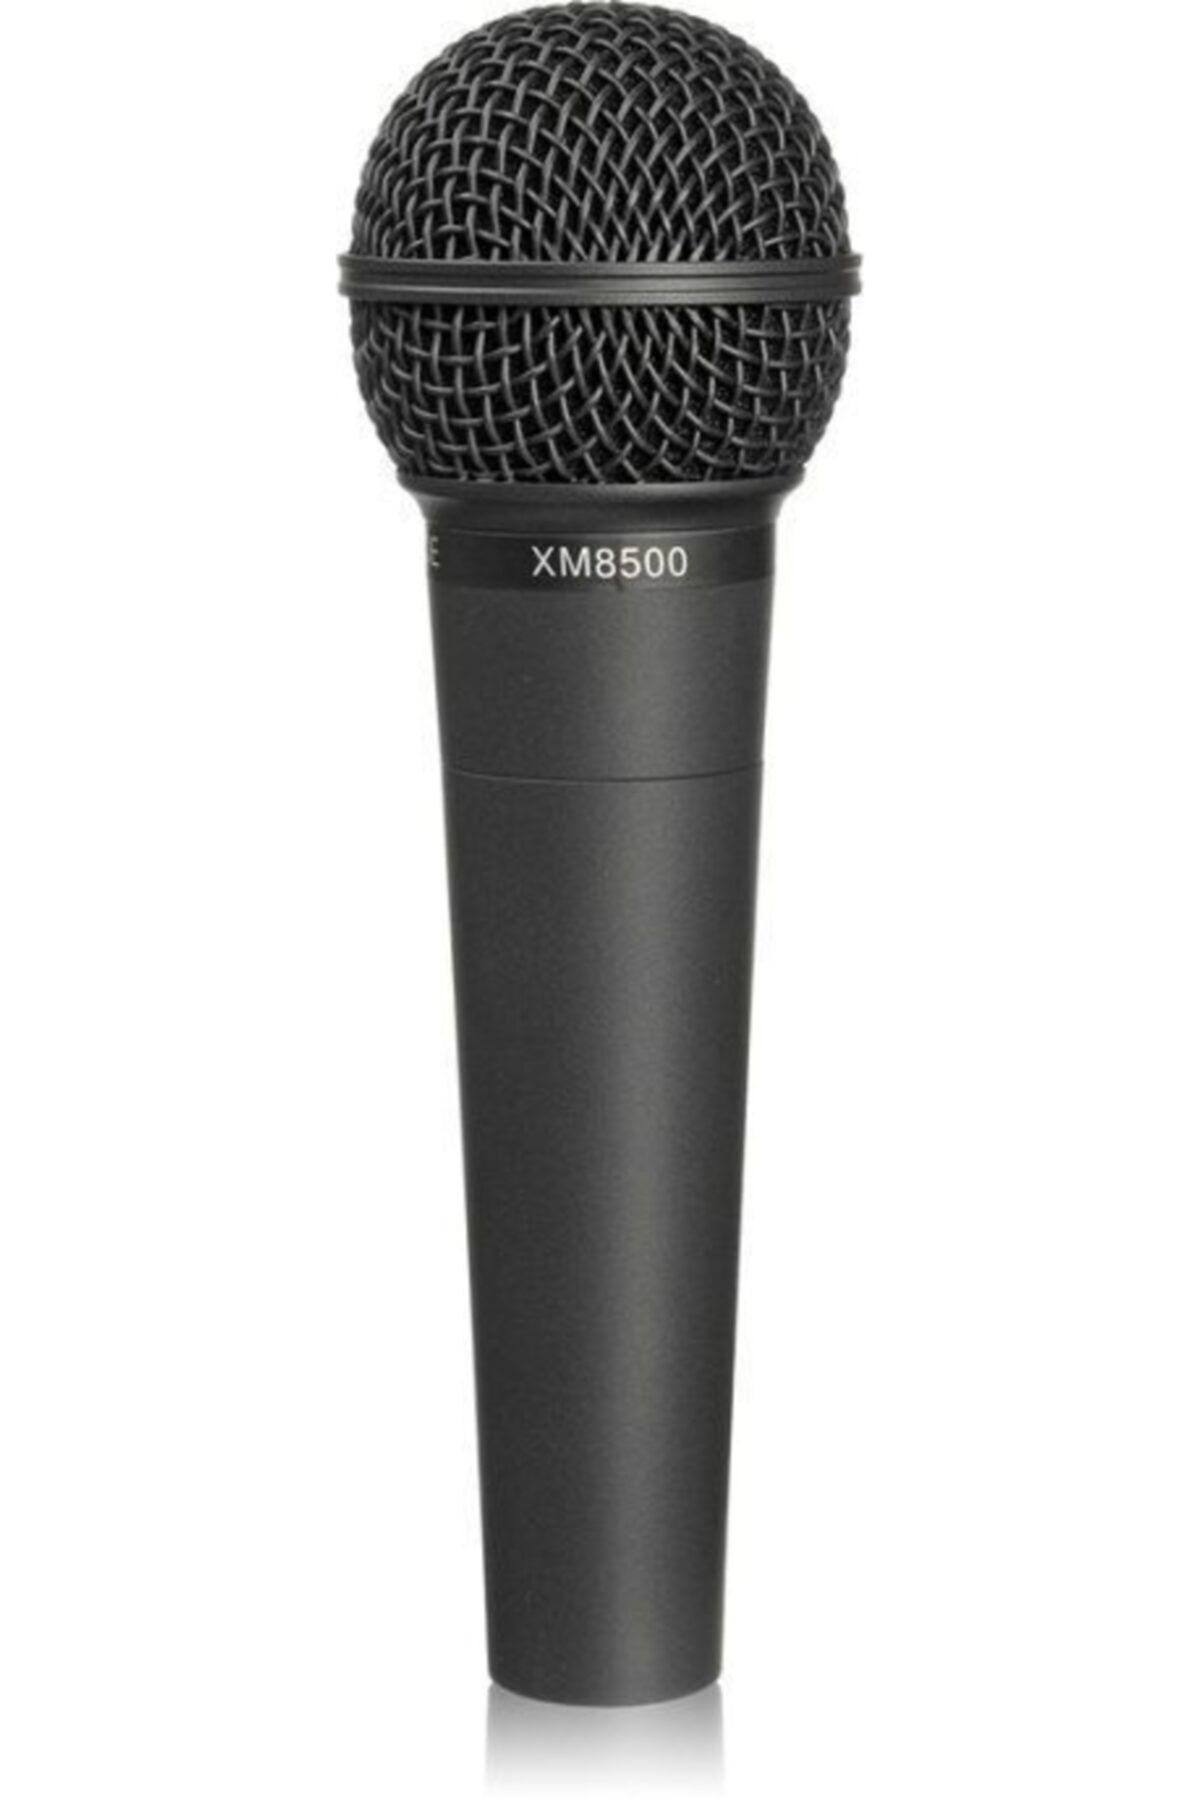 Behringer Xm8500 El Tipi Dinamik Mikrofon